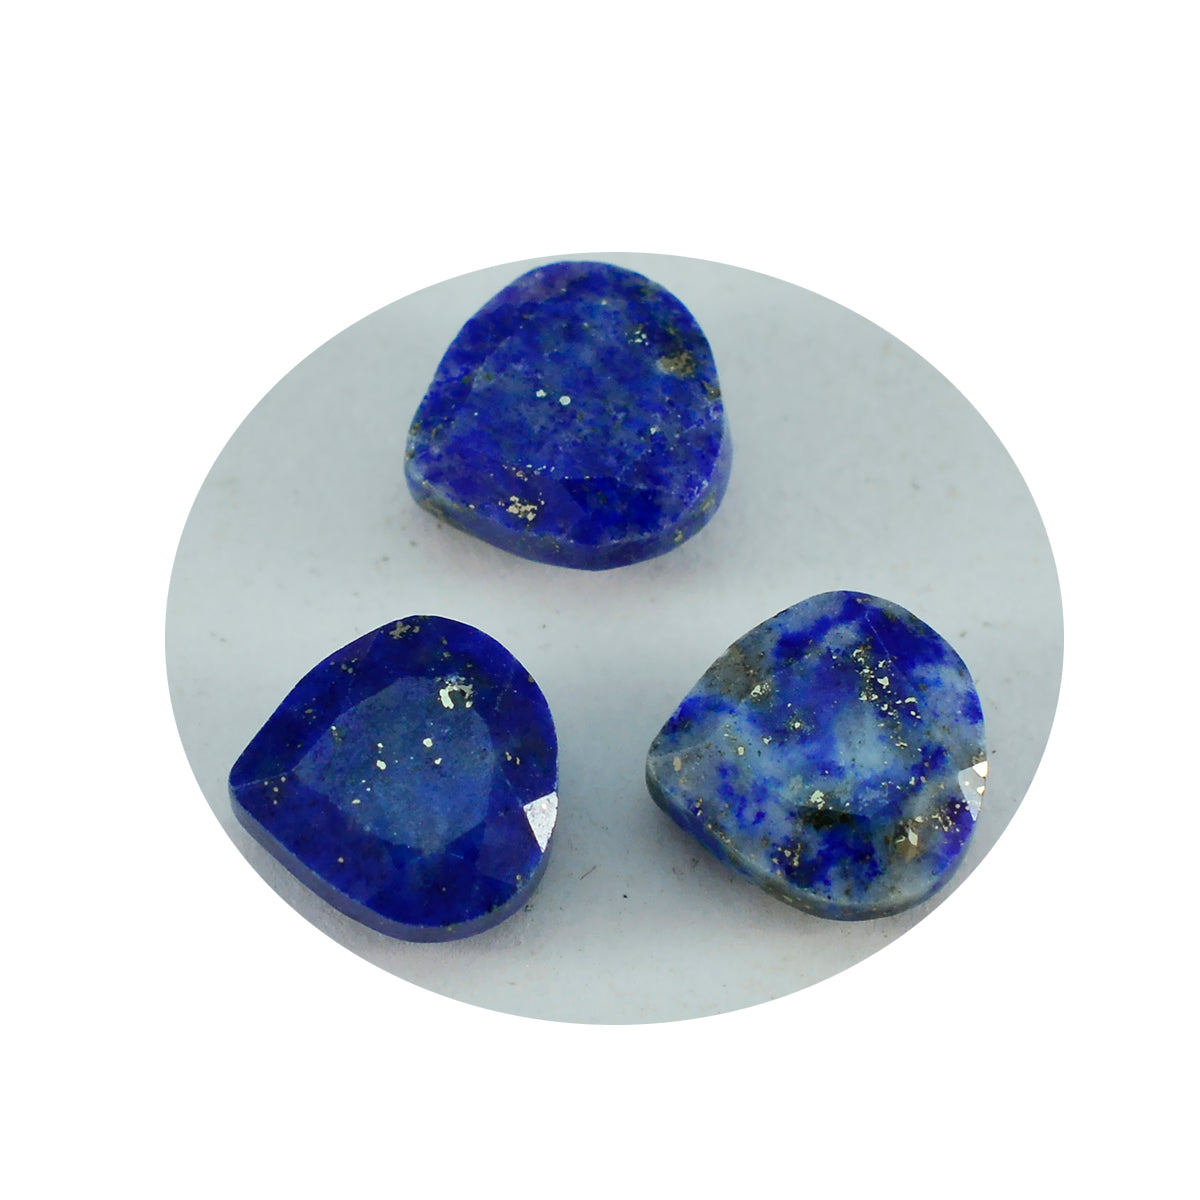 riyogems 1 шт. натуральный синий лазурит ограненный 14x14 мм в форме сердца удивительного качества свободный драгоценный камень